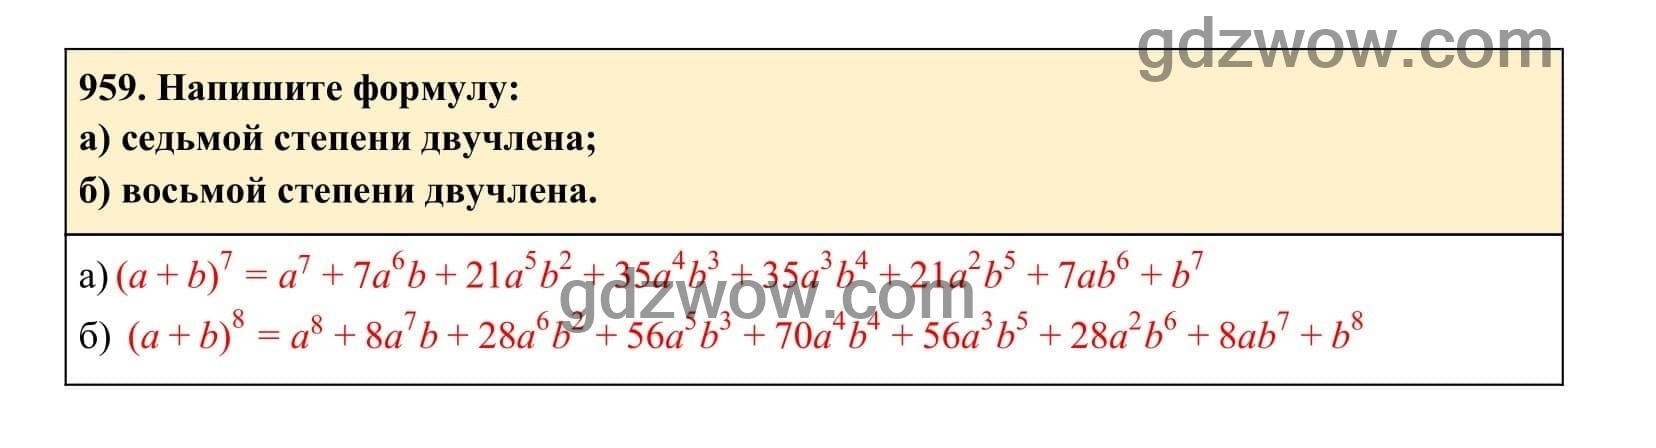 Упражнение 959 - ГДЗ по Алгебре 7 класс Учебник Макарычев (решебник) - GDZwow